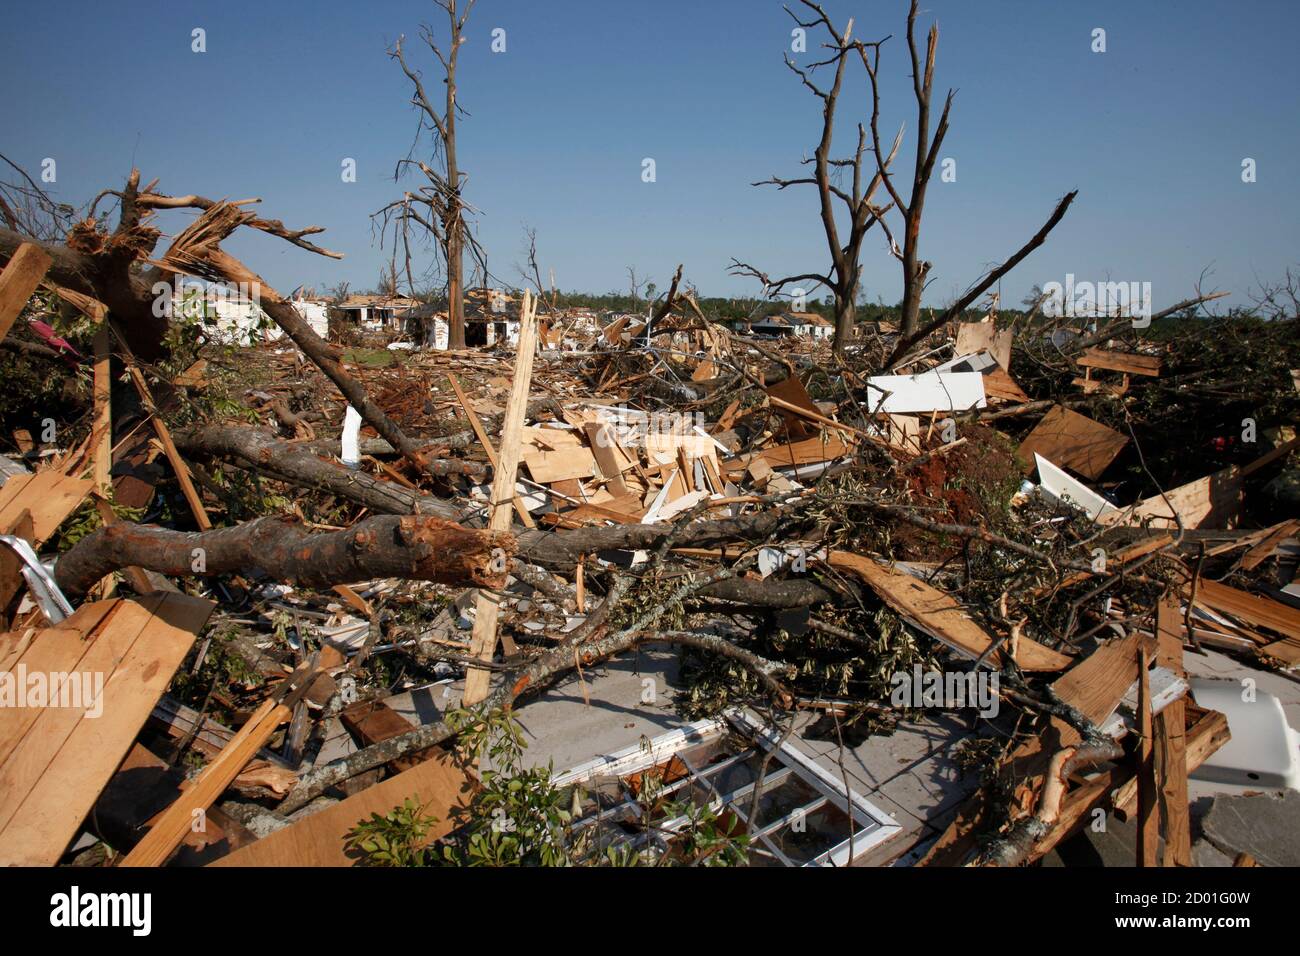 Une vue des séquelles des tornades meurtrières dans le quartier gravement endommagé de Tuscaloosa, en Alabama, le 30 avril 2011. Samedi, le gouvernement a intensifié ses efforts pour aider des milliers de sans-abri victimes de la deuxième épidémie de tornade la plus meurtrière du pays, qui a tué au moins 350 personnes. REUTERS/Lee Celano (ETATS-UNIS - Tags: ENVIRONNEMENT DE CATASTROPHE) Banque D'Images